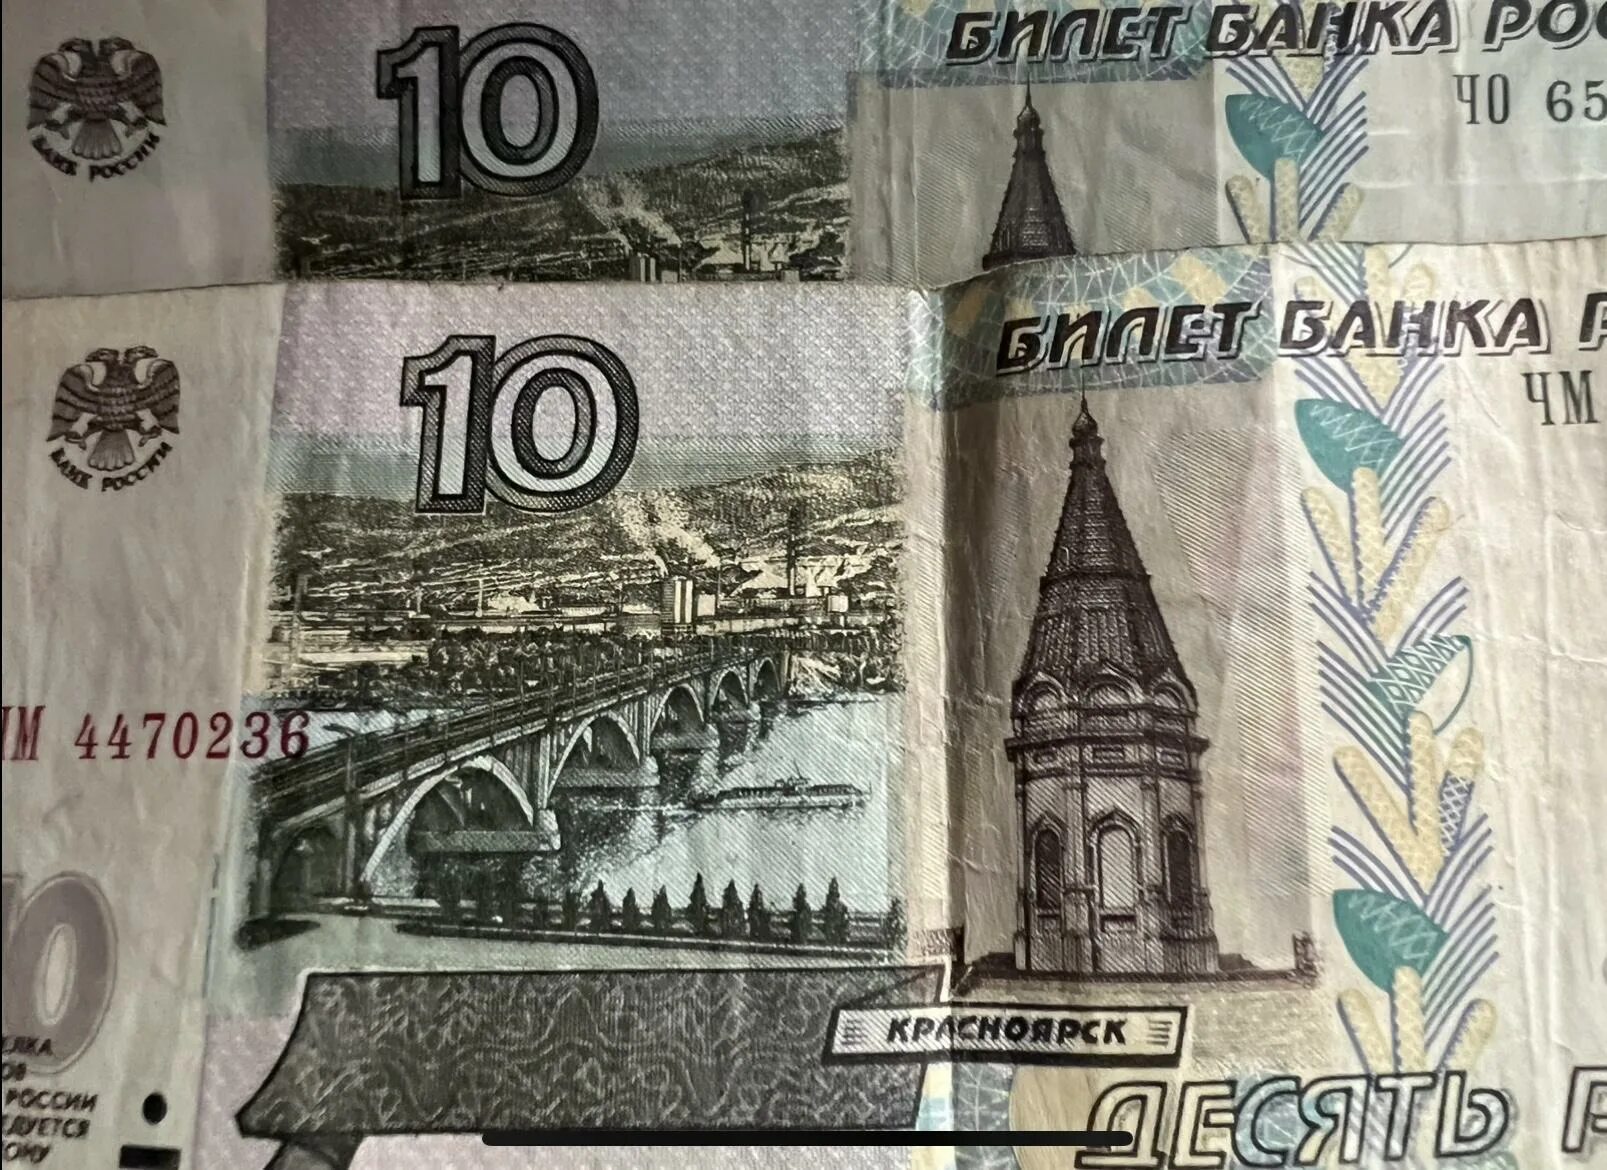 5 рублей в обороте. 10 Рублей купюра. 10 Рублей банкнота. Купюры номиналом 5 и 10 рублей. Десять рублей купюра.